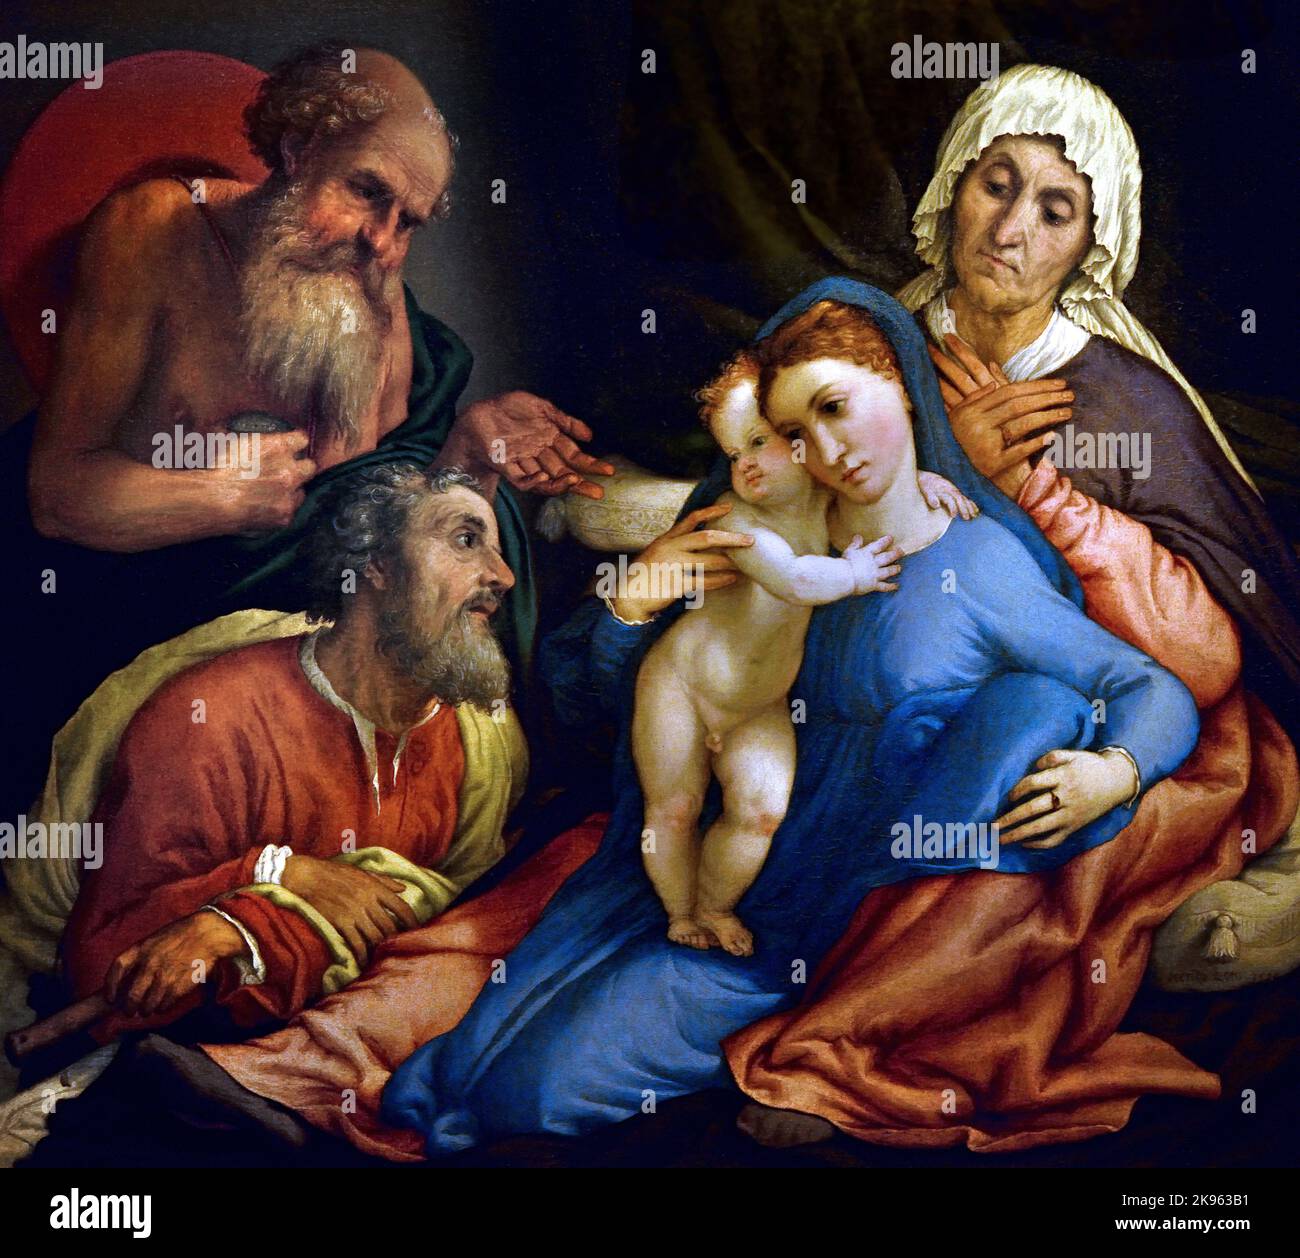 Sainte famille avec St Jérôme, Lorenzo Lotto, (Venezia 1480 - Loreto 1556) , Florence, Italie. ( Sainte Anne, penchée contre la marche sur un lit à baldaquin, avec ses jambes ouvertes, avec la Vierge et le bébé Jésus, entre eux, Saint Jérôme, à gauche, pointant vers la Sainte famille avec sa main ouverte, ) Banque D'Images